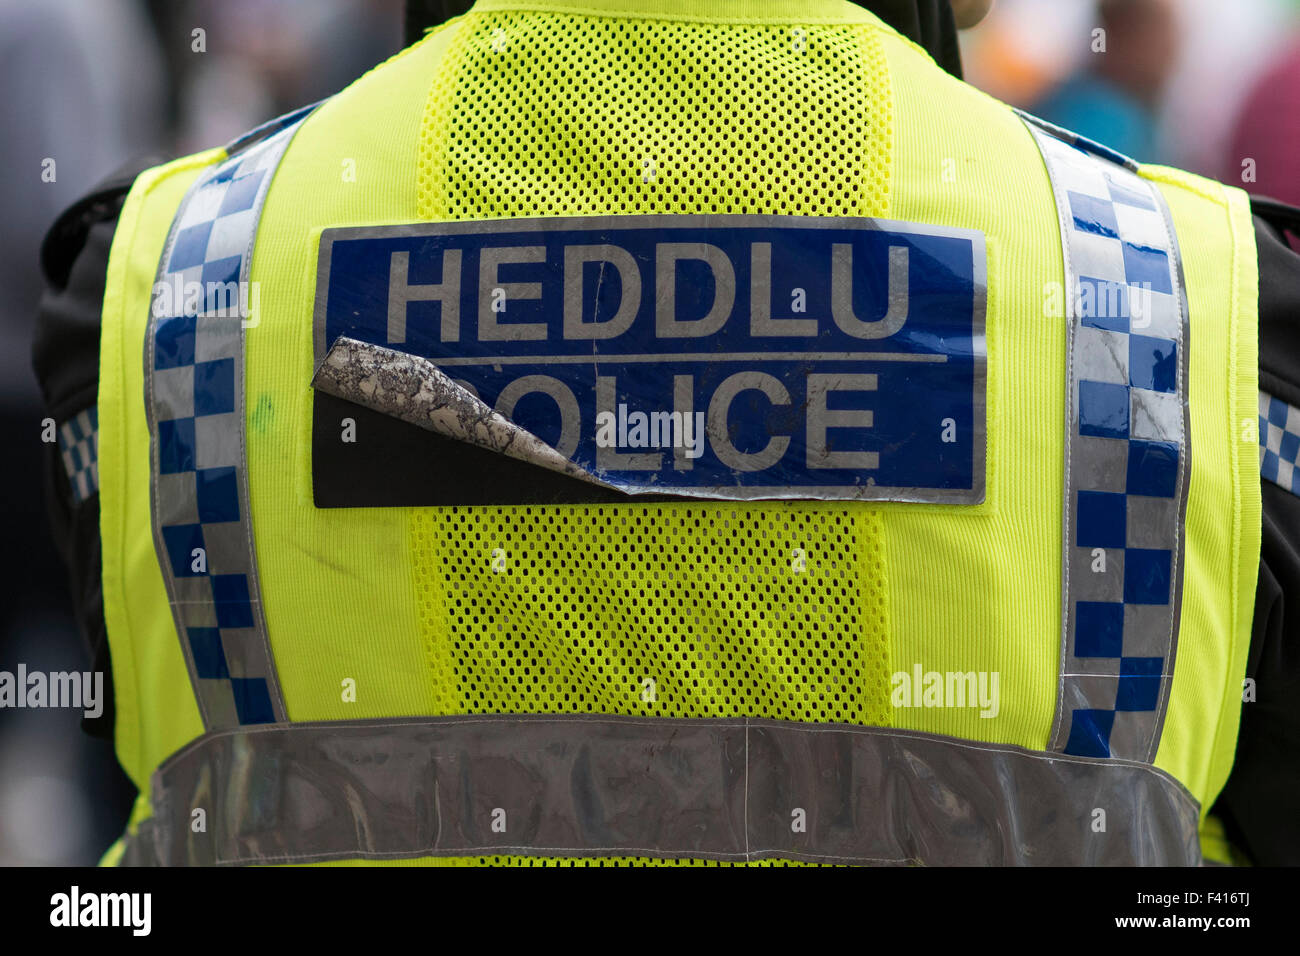 Un Welsh funzionario di polizia appare in corrispondenza di un evento. La forza di polizia del Galles hanno subito tagli negli ultimi anni. Foto Stock